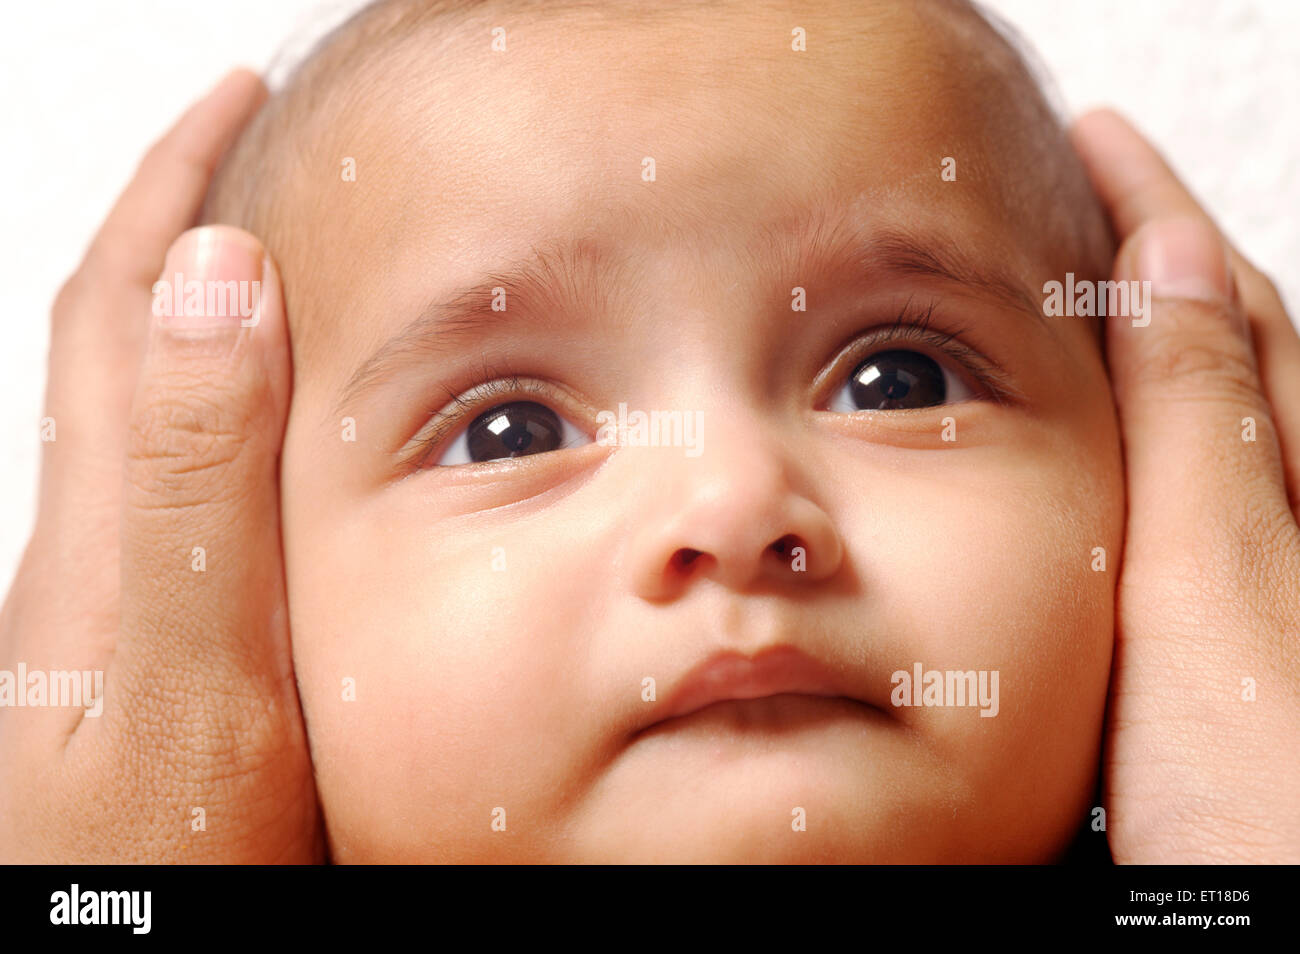 Indischen Baby Kopf geschützt durch Mütter Hand Herr Herr #736LA #736 K Stockfoto